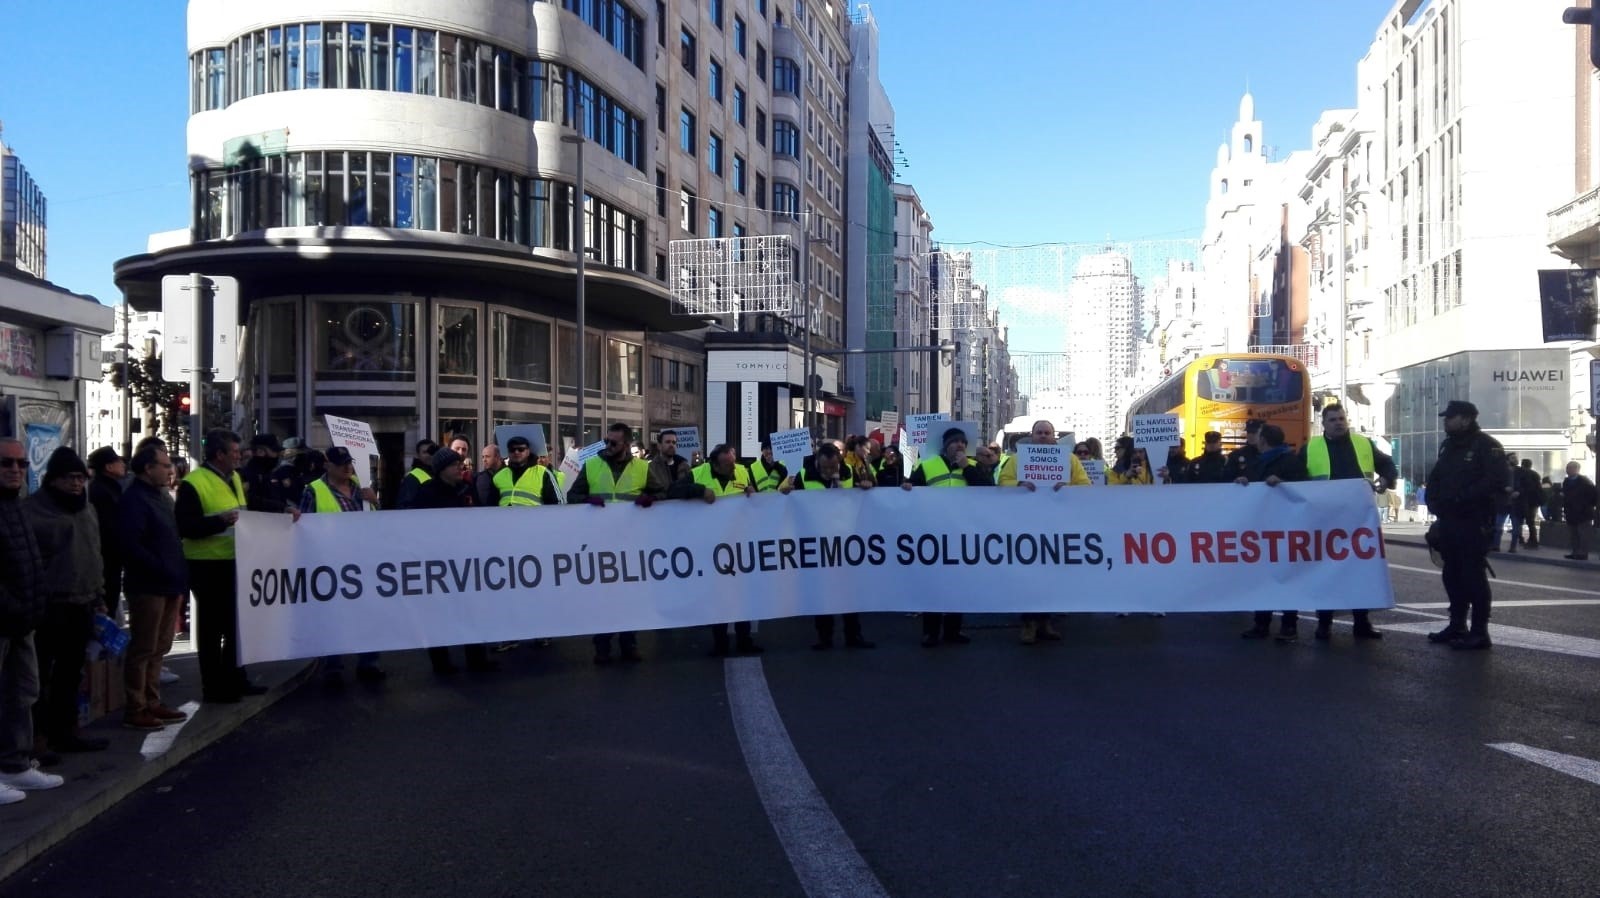 Cabecera de la manifestación contra Madrid Centra. (Foto. EP)